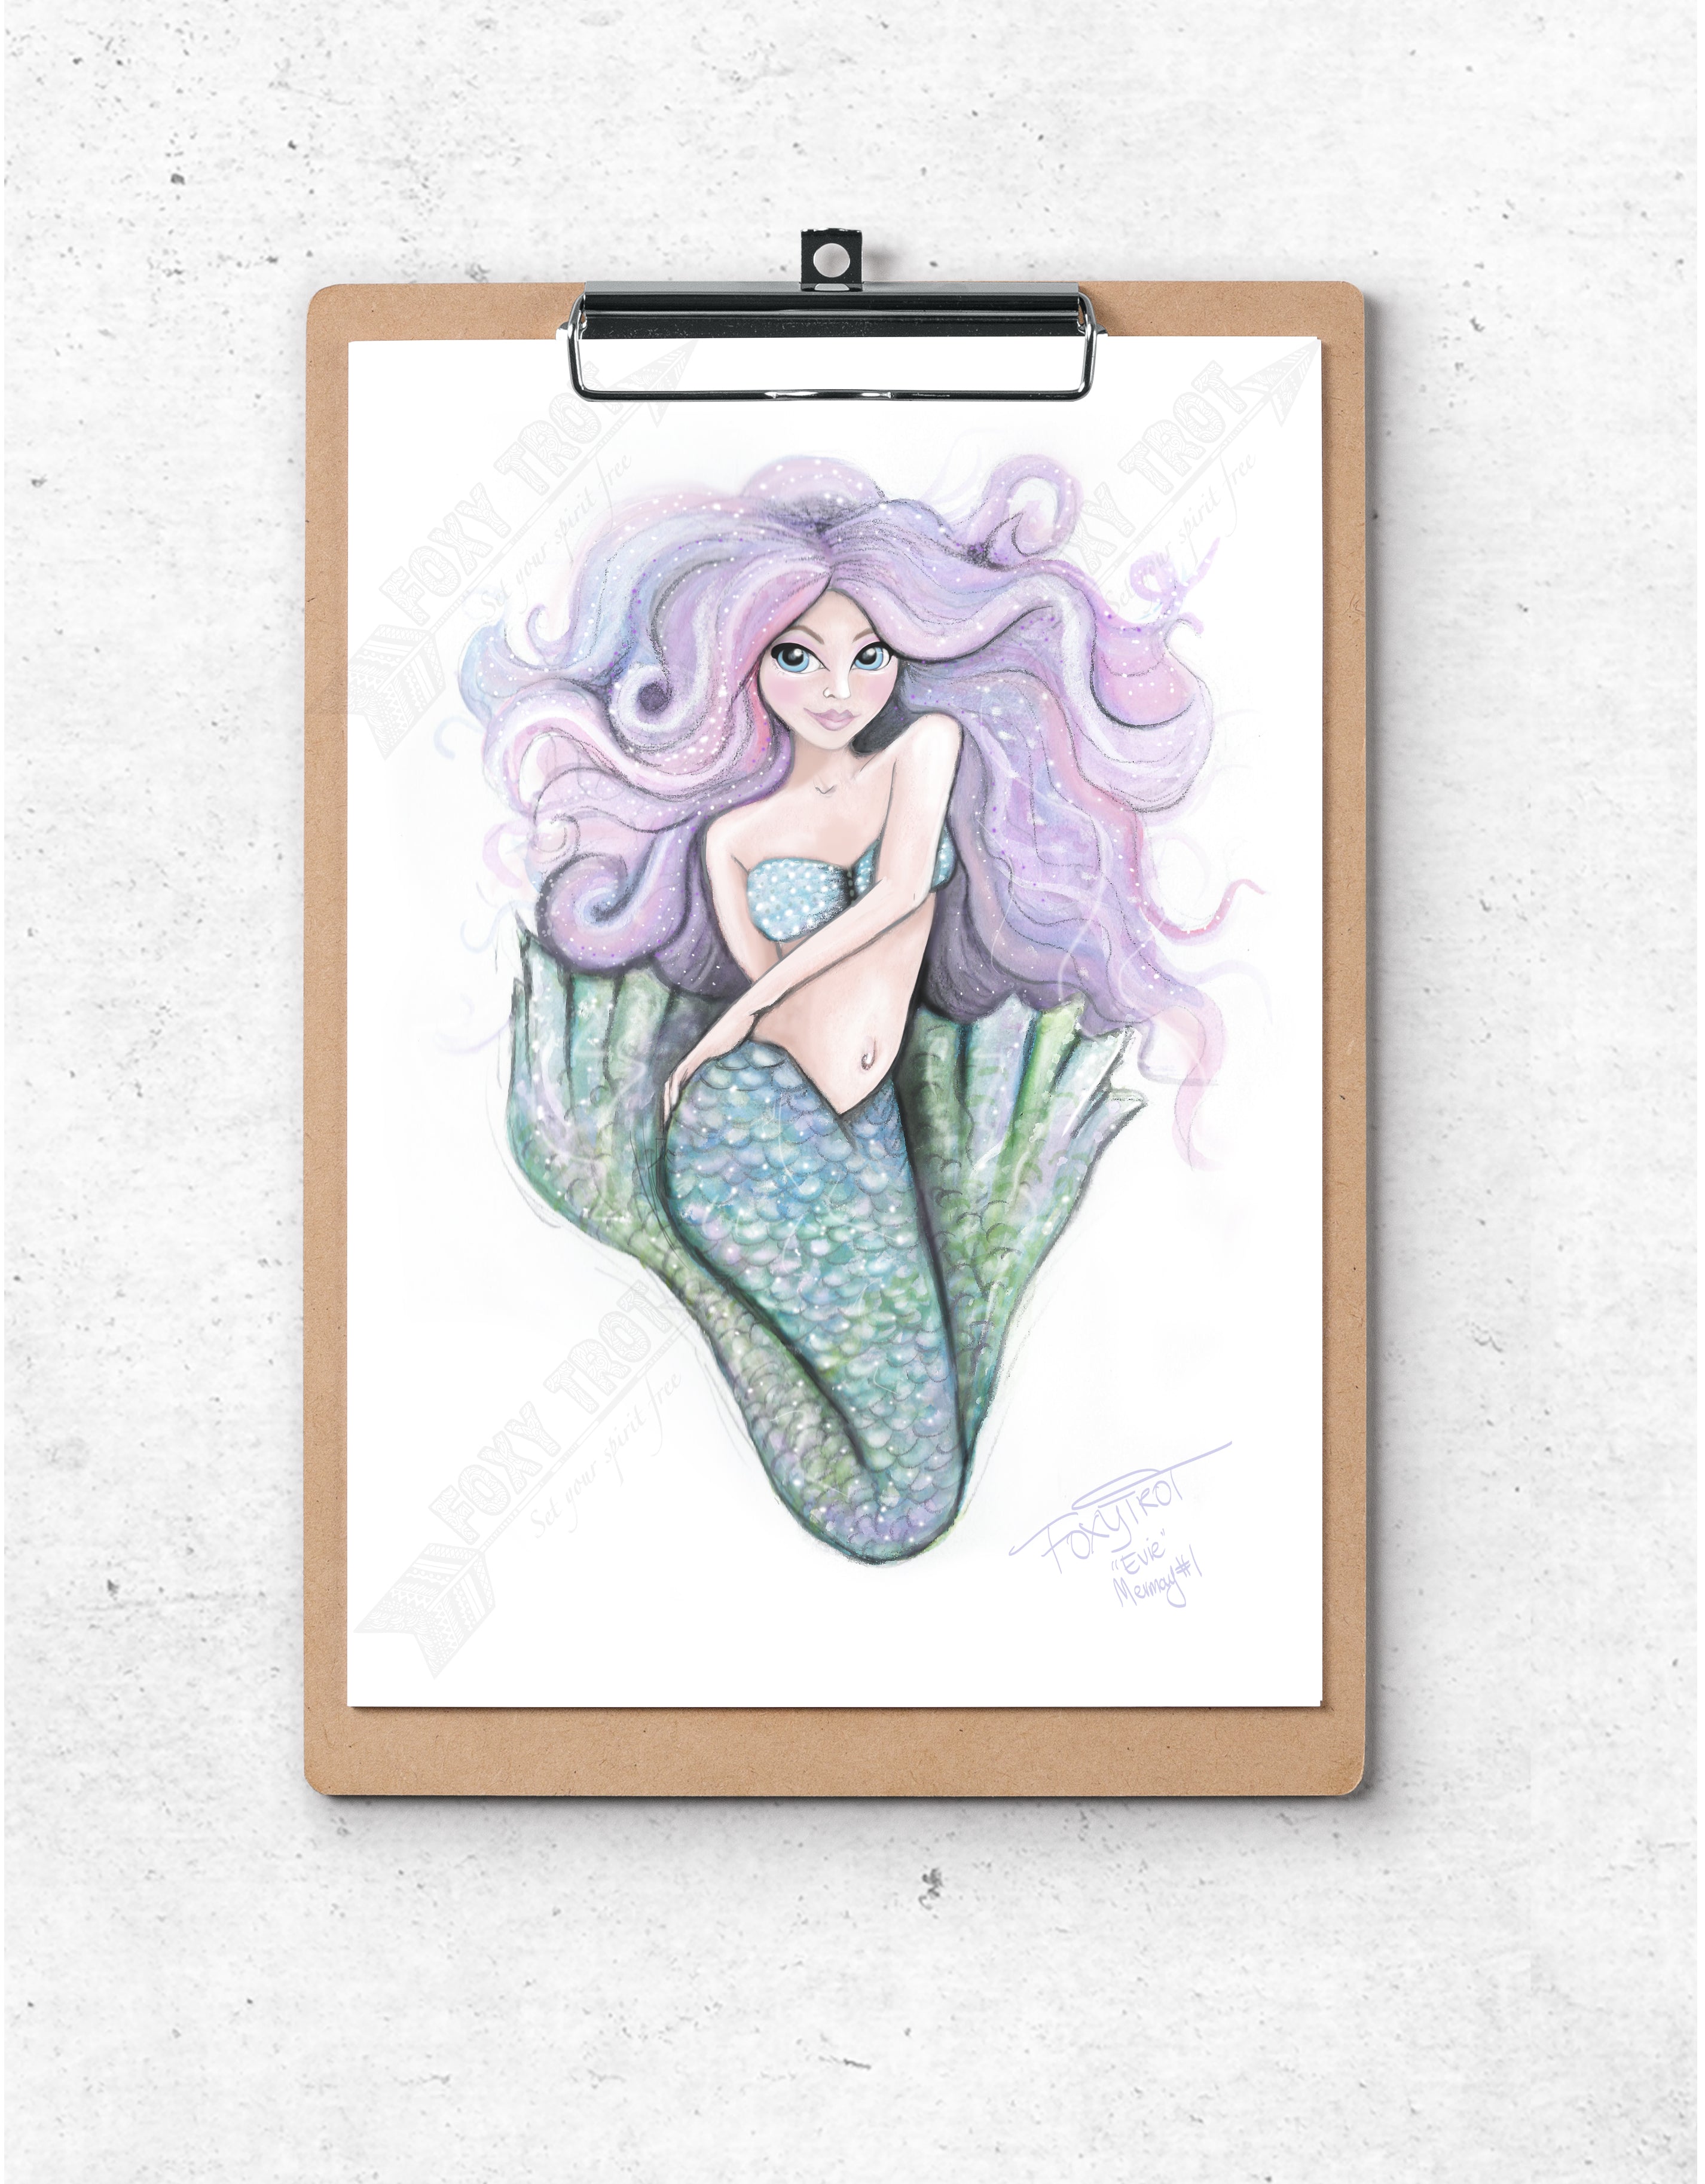 Evie The Mermaid